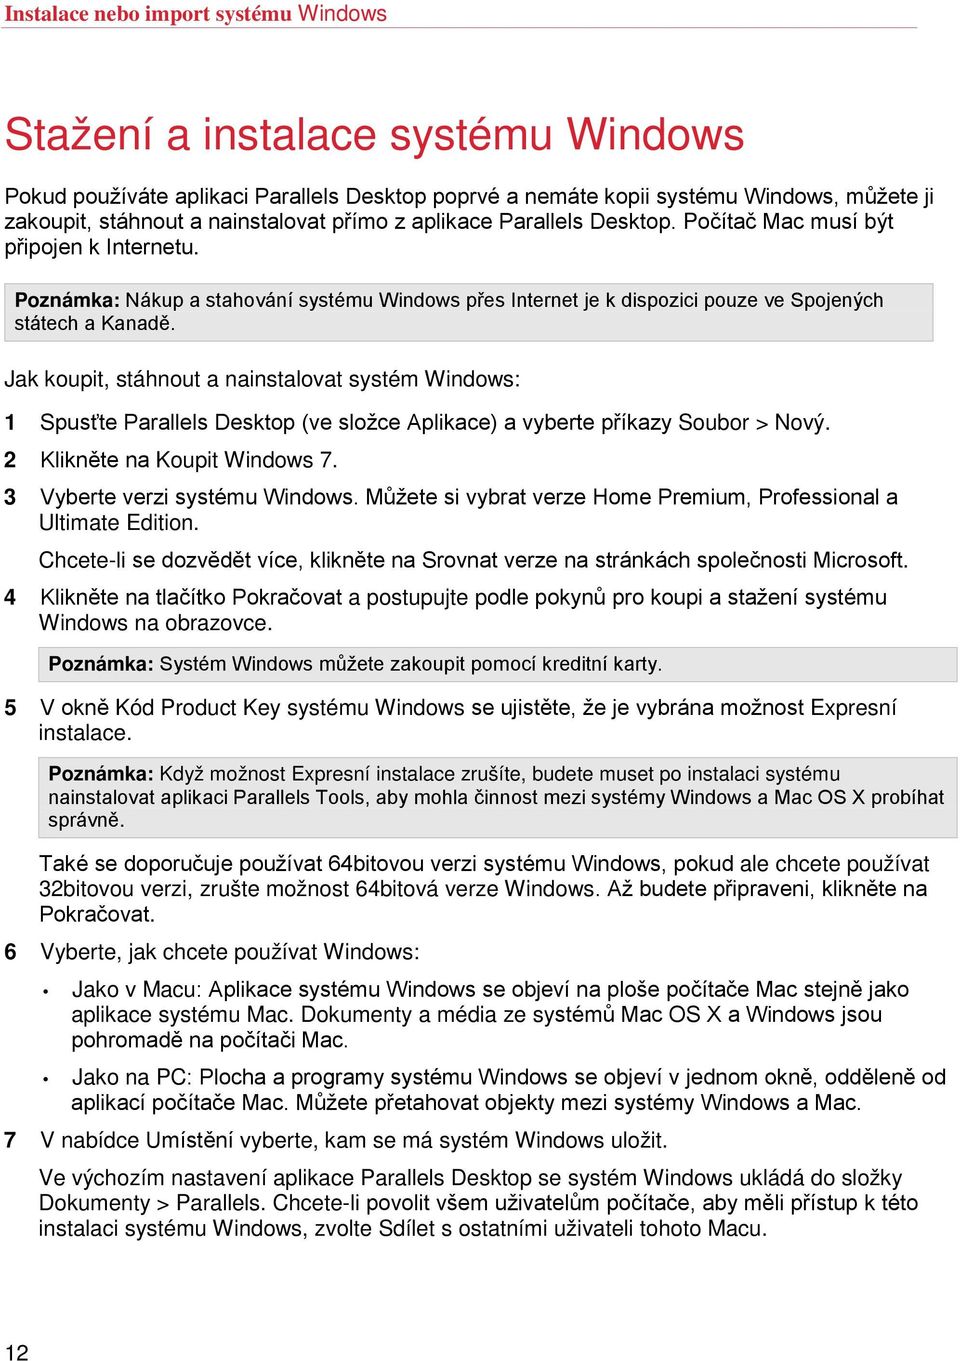 Jak koupit, stáhnout a nainstalovat systém Windows: 1 Spusťte Parallels Desktop (ve složce Aplikace) a vyberte příkazy Soubor > Nový. 2 Klikněte na Koupit Windows 7. 3 Vyberte verzi systému Windows.